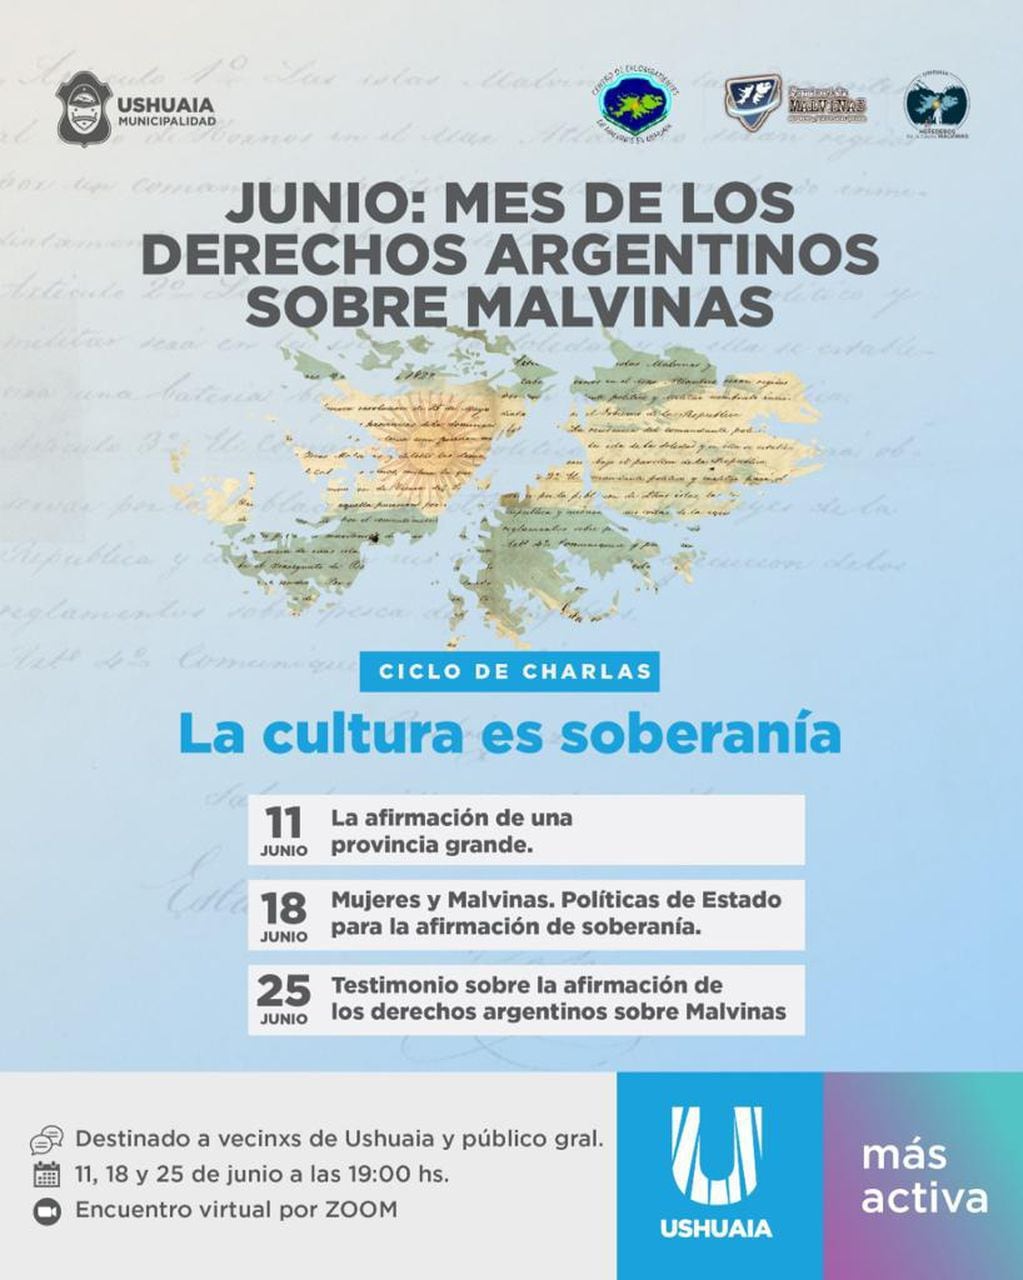 Las charlas tienen el aval de Fundación Malvinas, el Centro de Excombatientes de Malvinas en Ushuaia y la Subcomisión "Herederos de la Causa Malvinas" de Ushuaia.